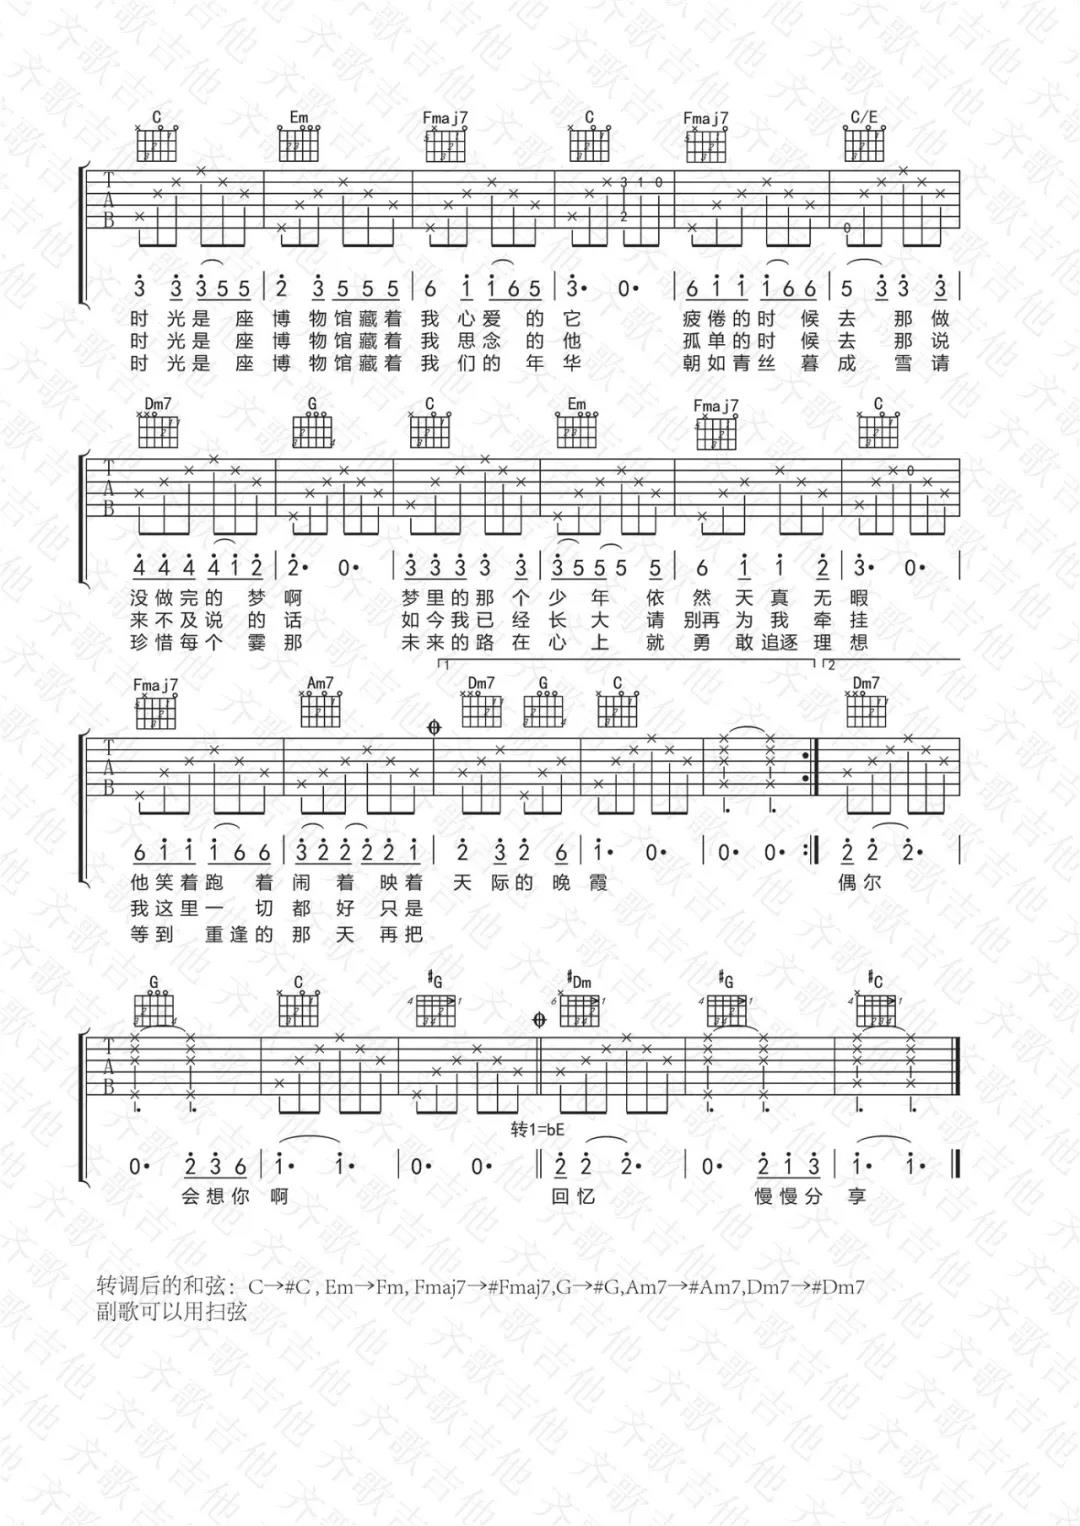 木小雅《时光是座博物馆》吉他谱(D调)-Guitar Music Score